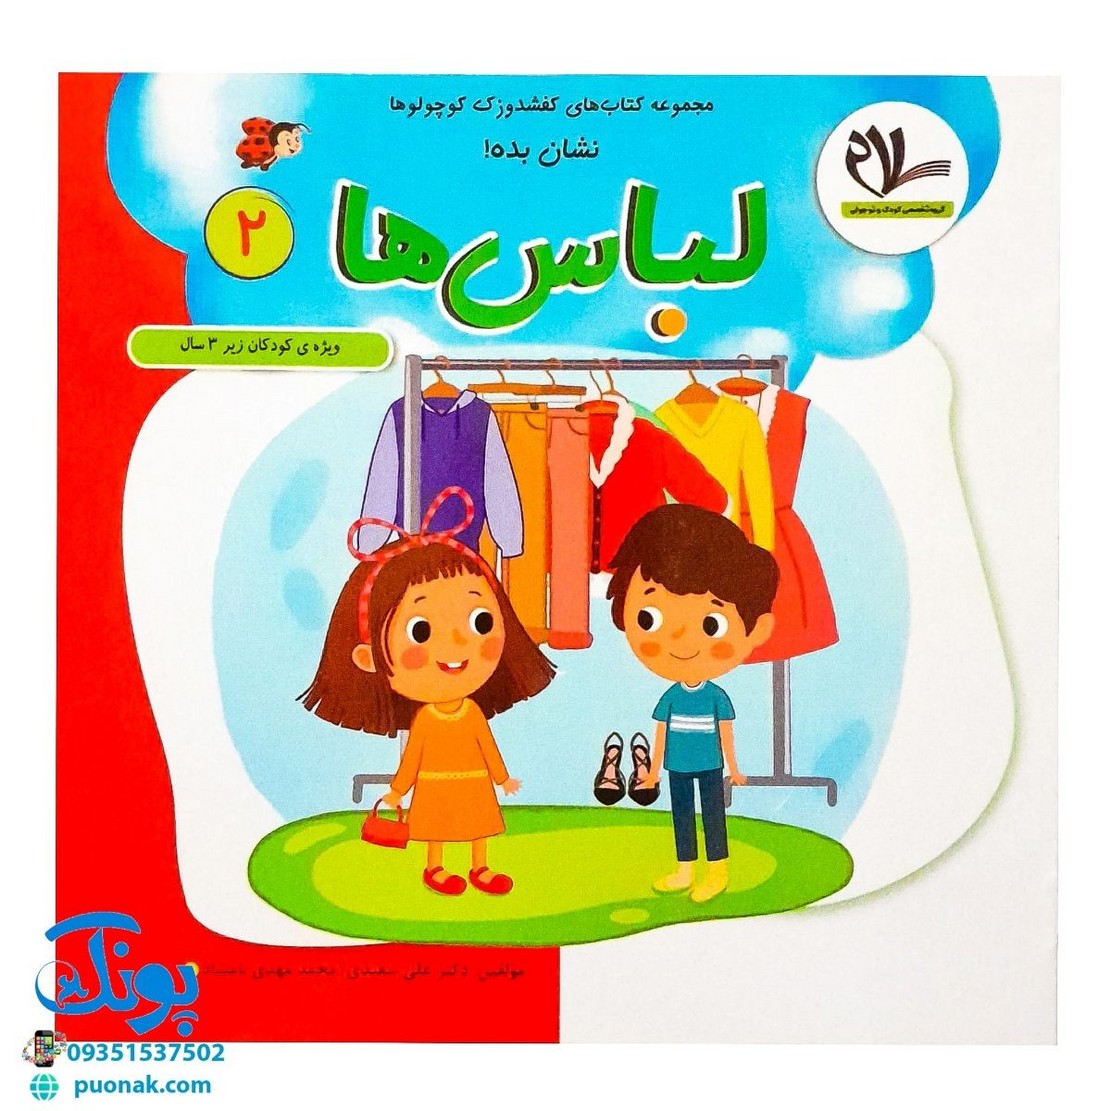 مجموعه کتابهای کفشدوزک کوچولو جلد دوم ۲ (نشان بده! لباس ها) ویژه کودکان زیر ۳ سال